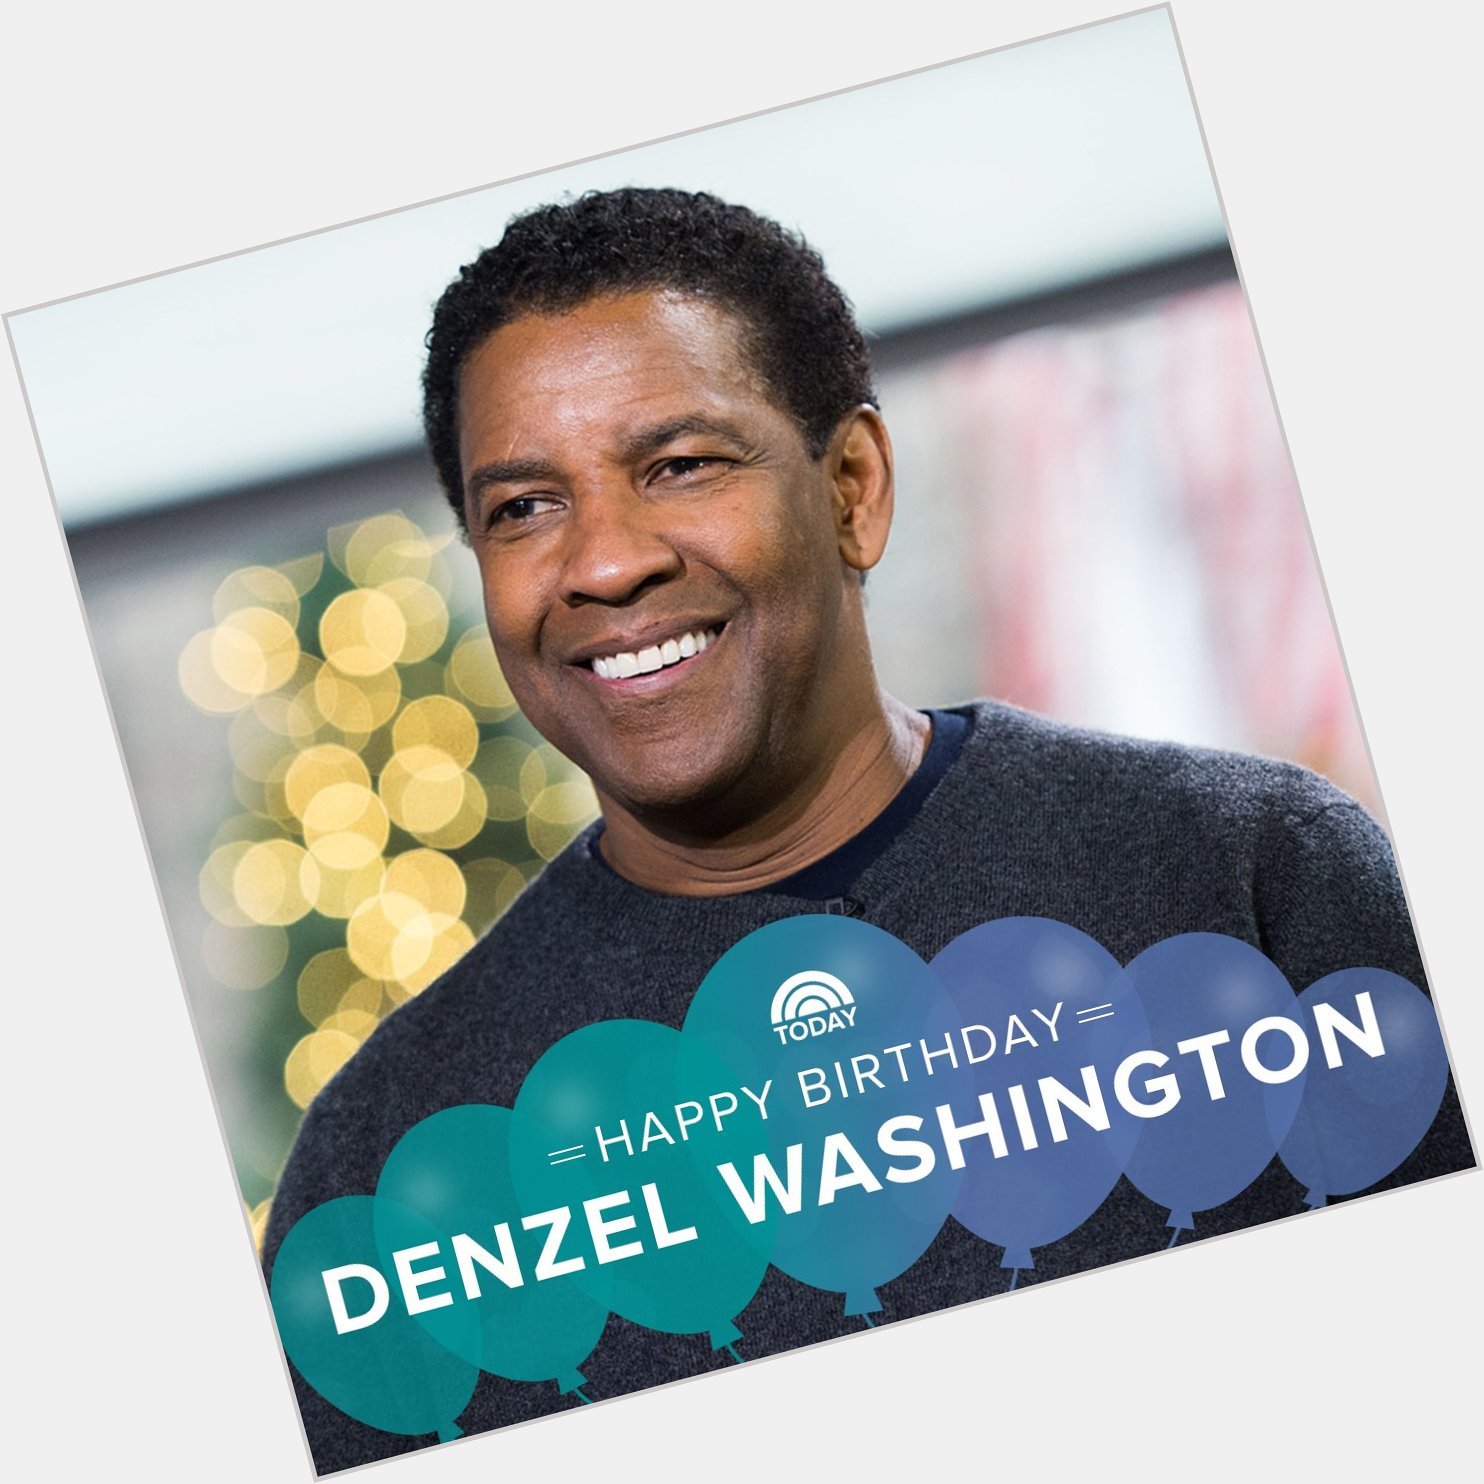 Happy birthday, Denzel Washington! 